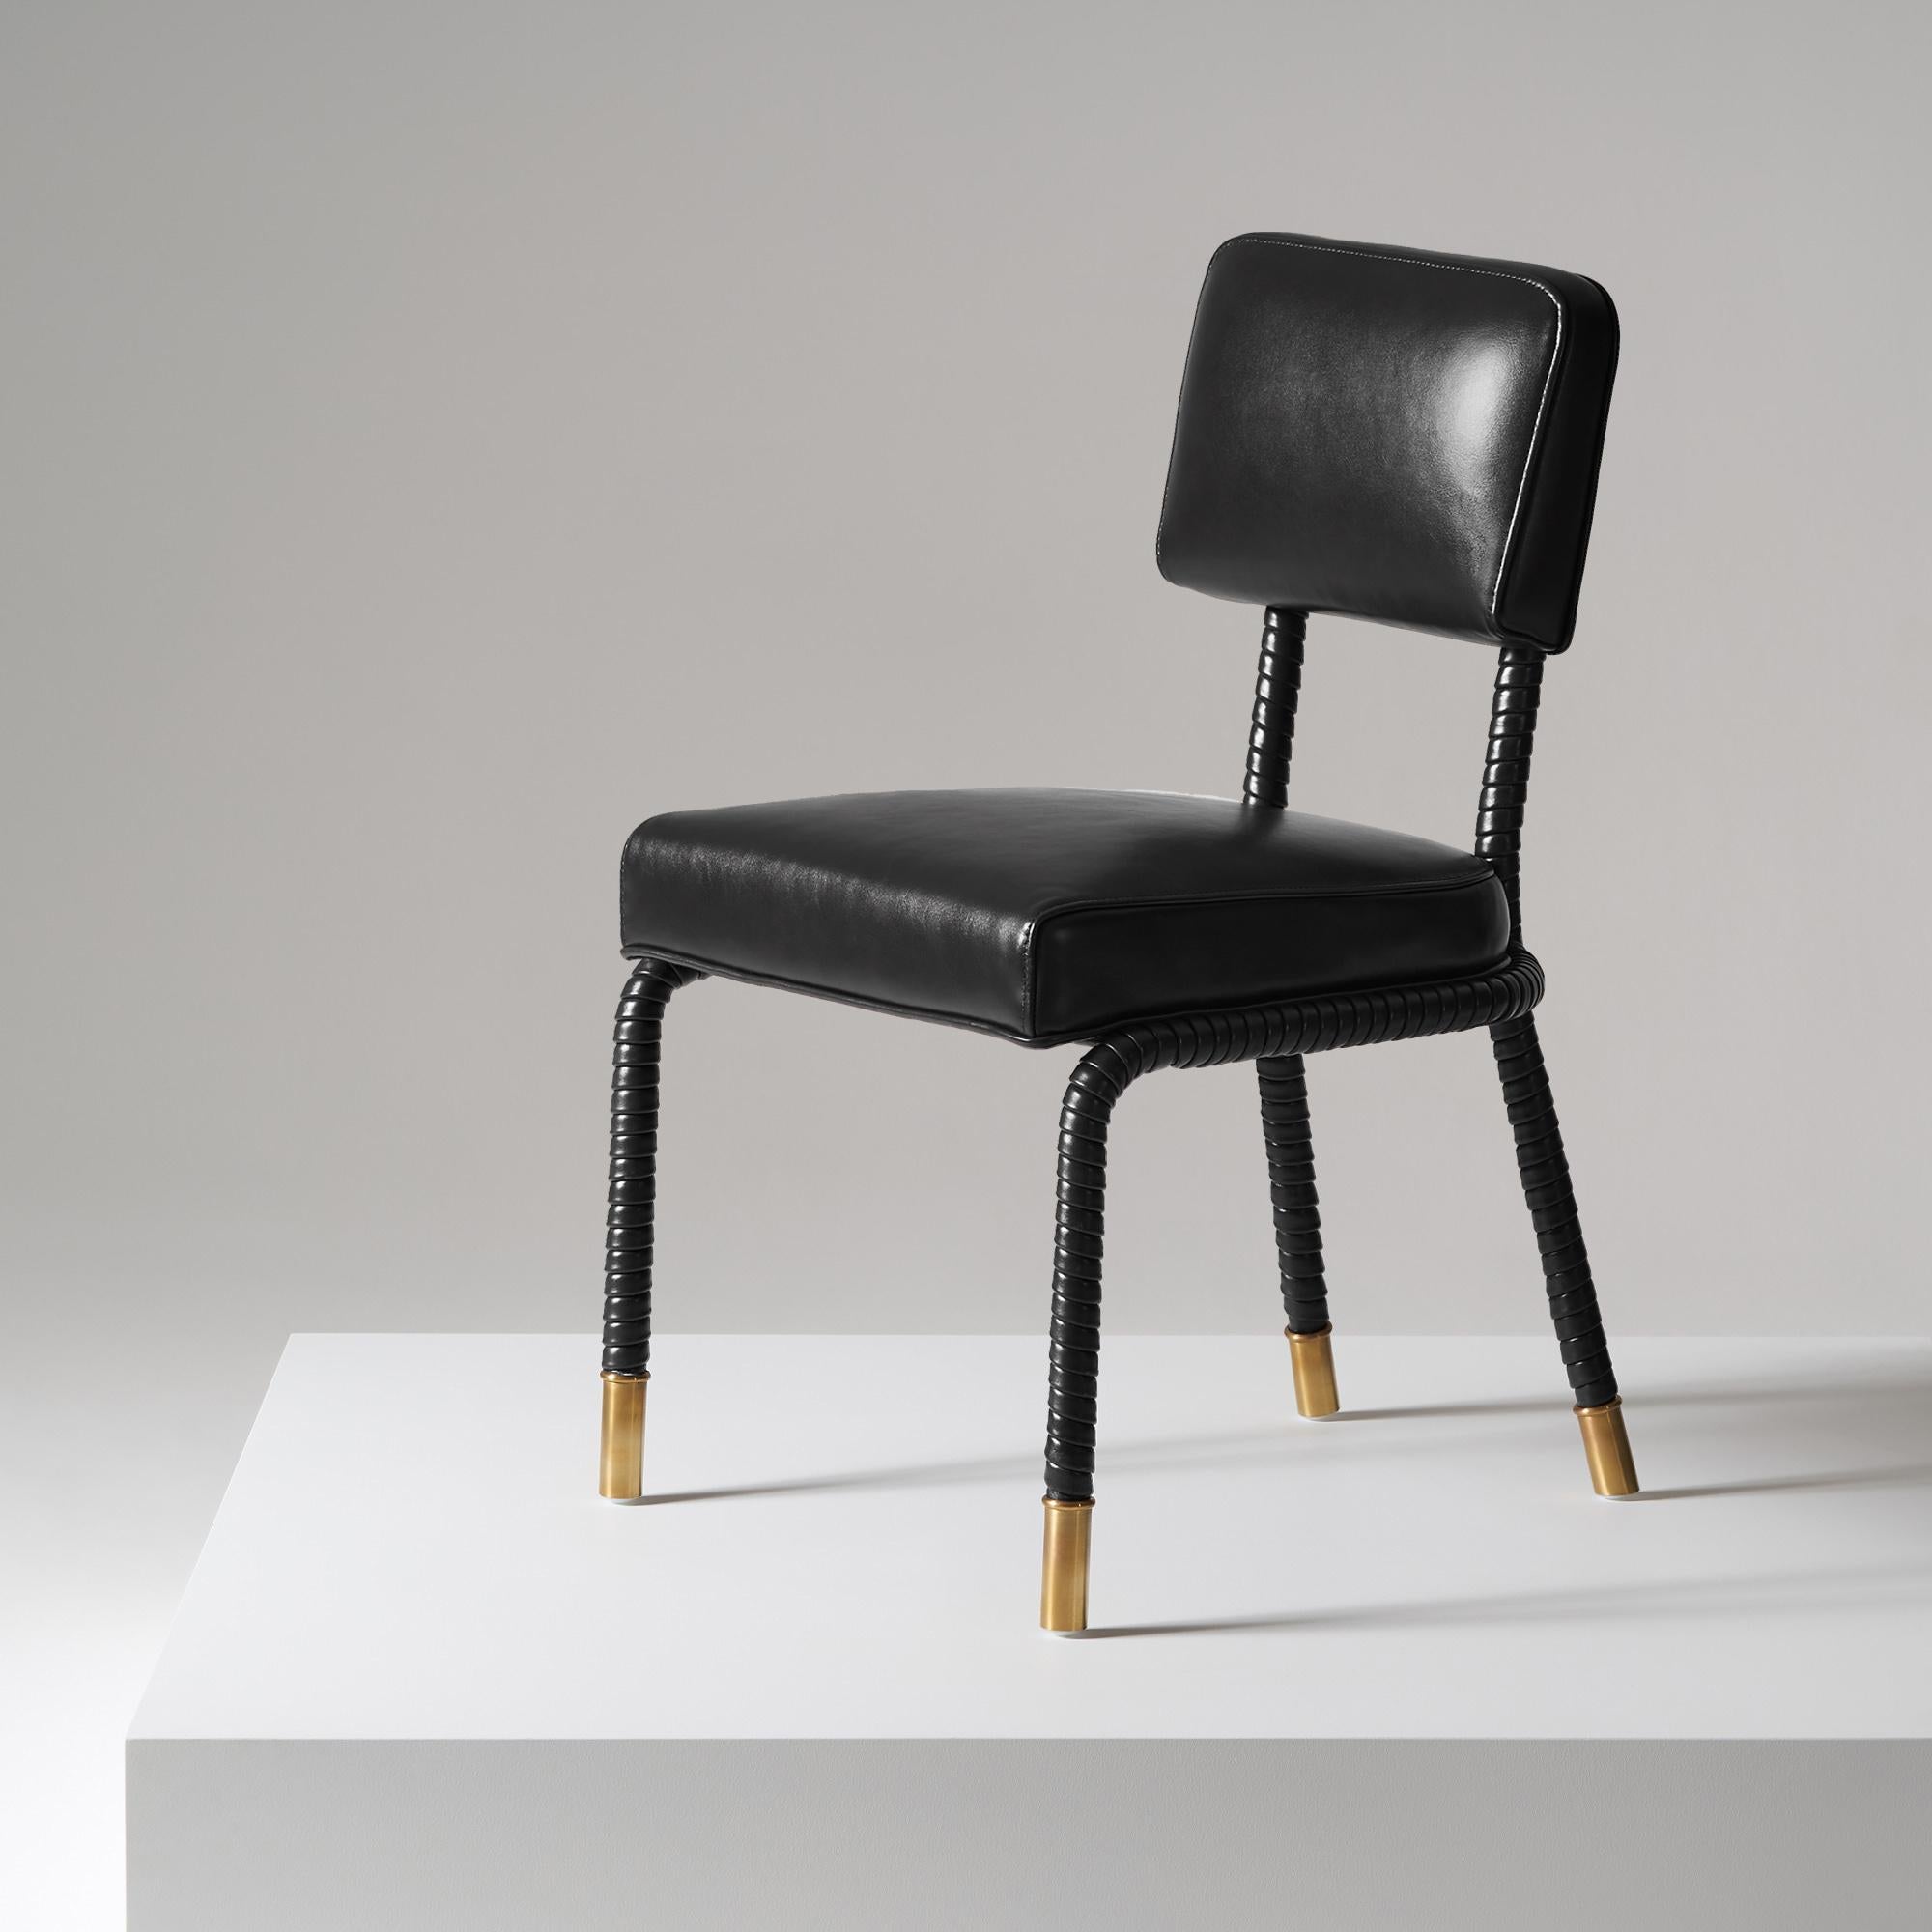 And Objects, studio de design de produits fondé par Martin Brudnizki et Nick Jeanes et basé à Londres.

La chaise d'appoint Easton est fabriquée de manière unique à partir d'acier inoxydable et de cuir italien. Le cuir enveloppé à la main recouvre